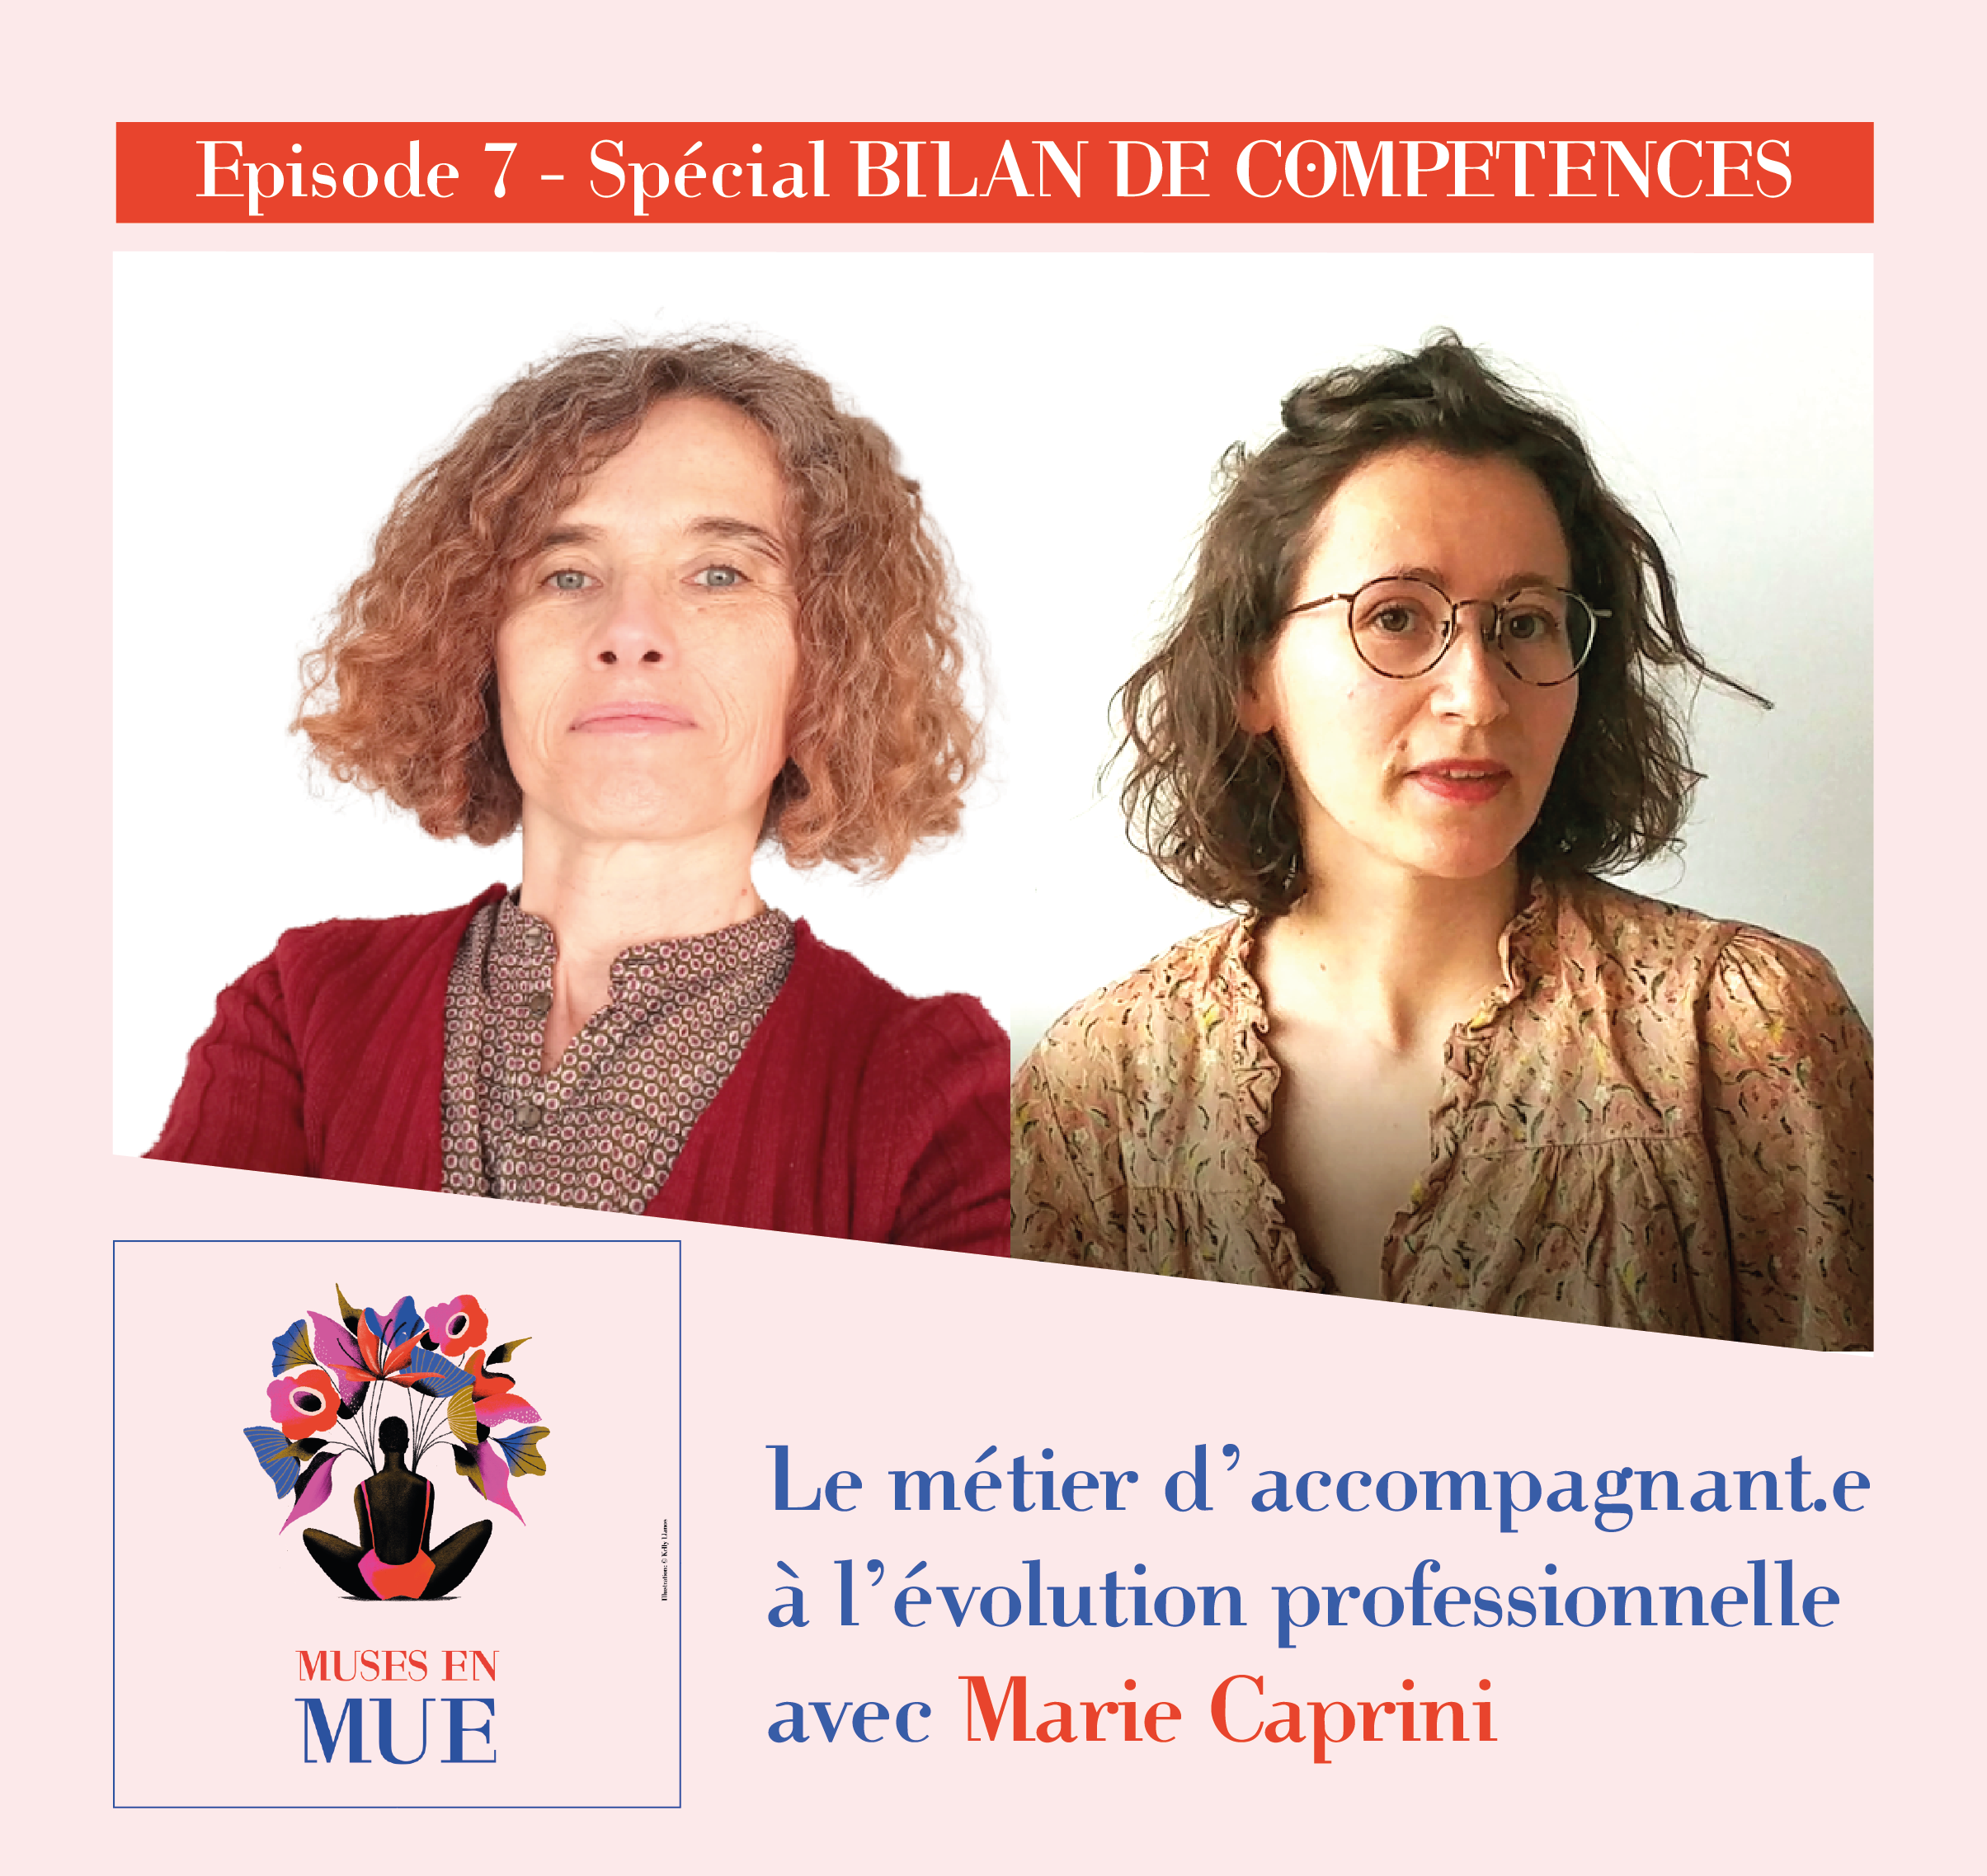 MUSES EN MUE – Episode 7 – SPECIAL BILAN DE COMPETENCES – avec Marie Caprini